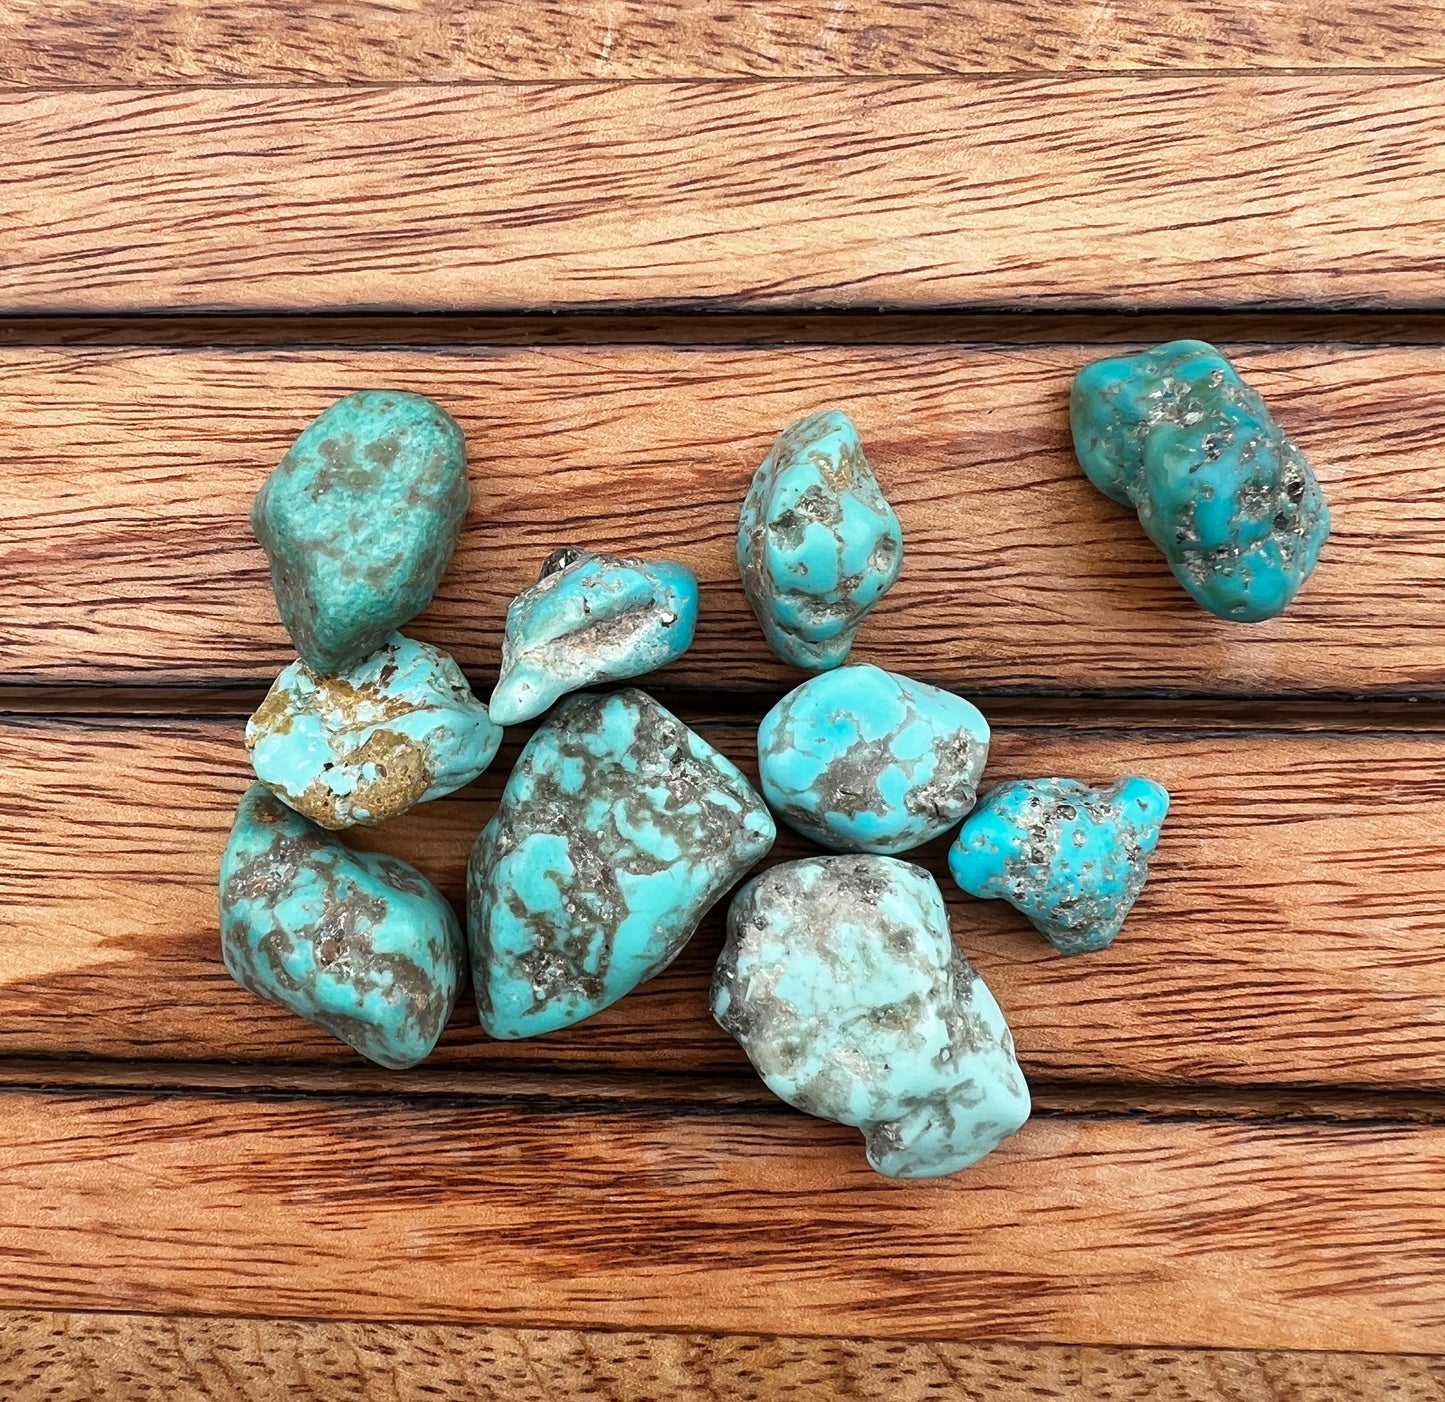 Turquoise Rough Stone- $8 per gram